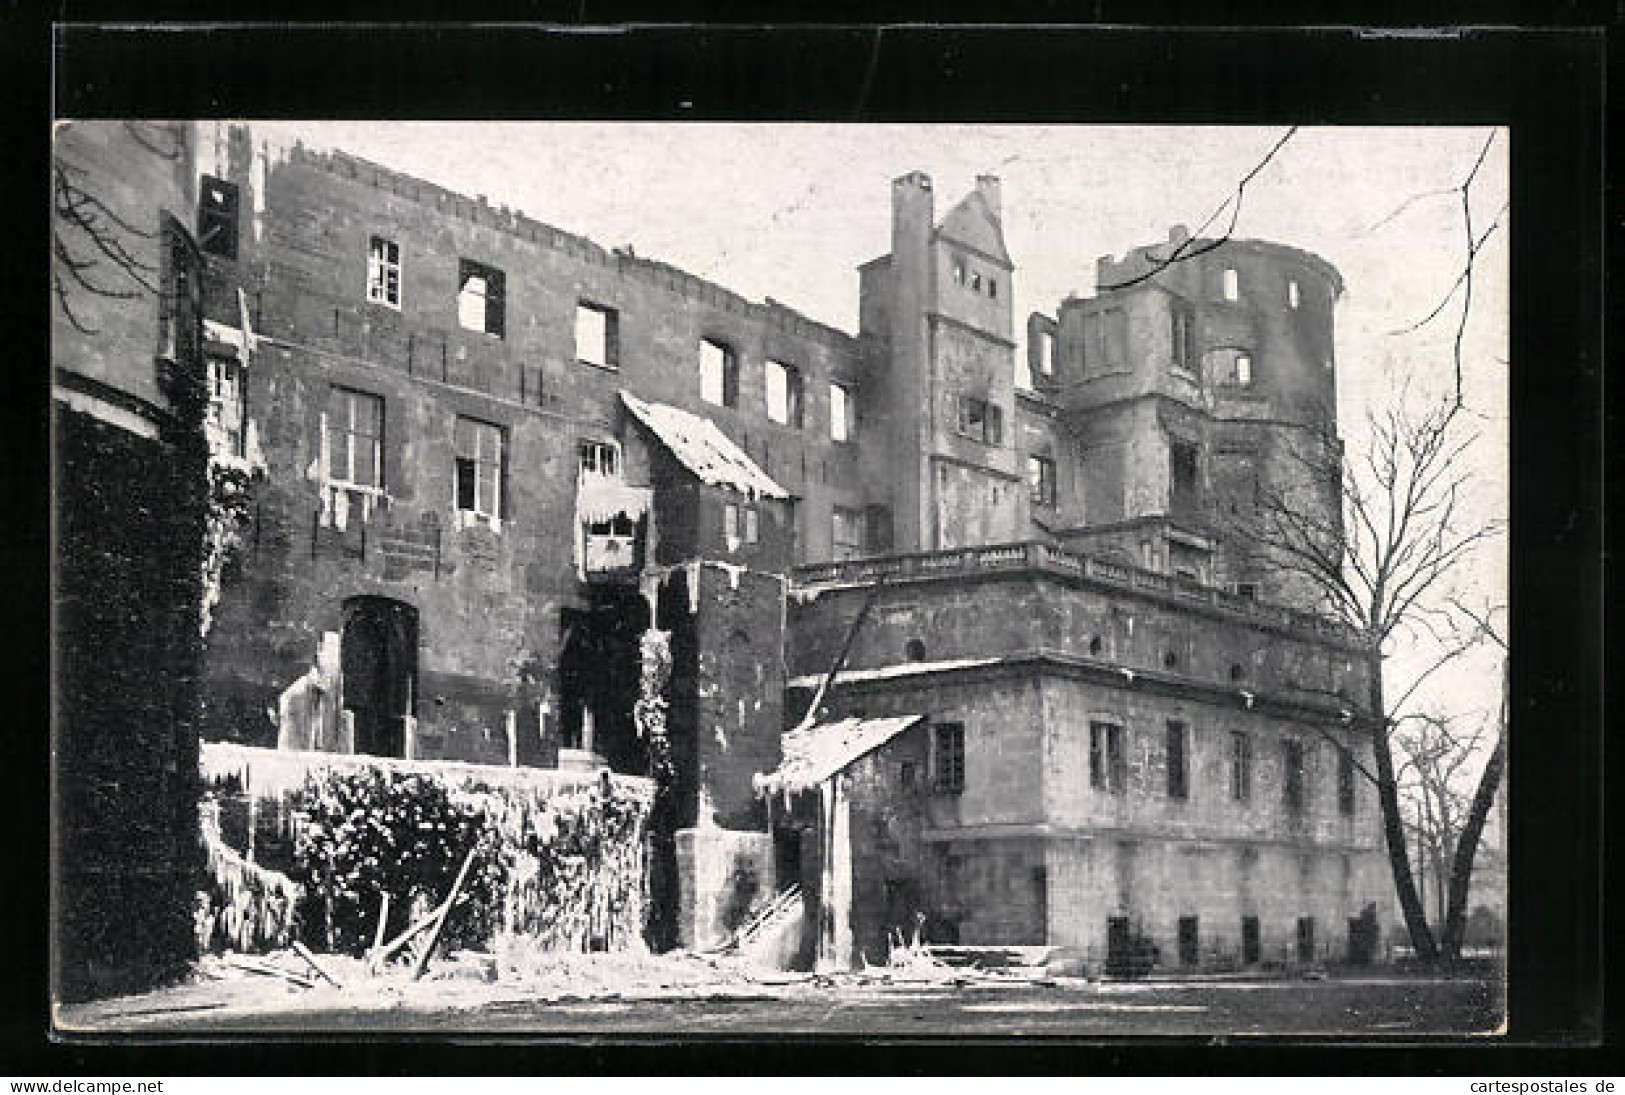 AK Stuttgart, Brand Des Alten Schlosses 1931, Ausgebrannte Schlossfront  - Disasters